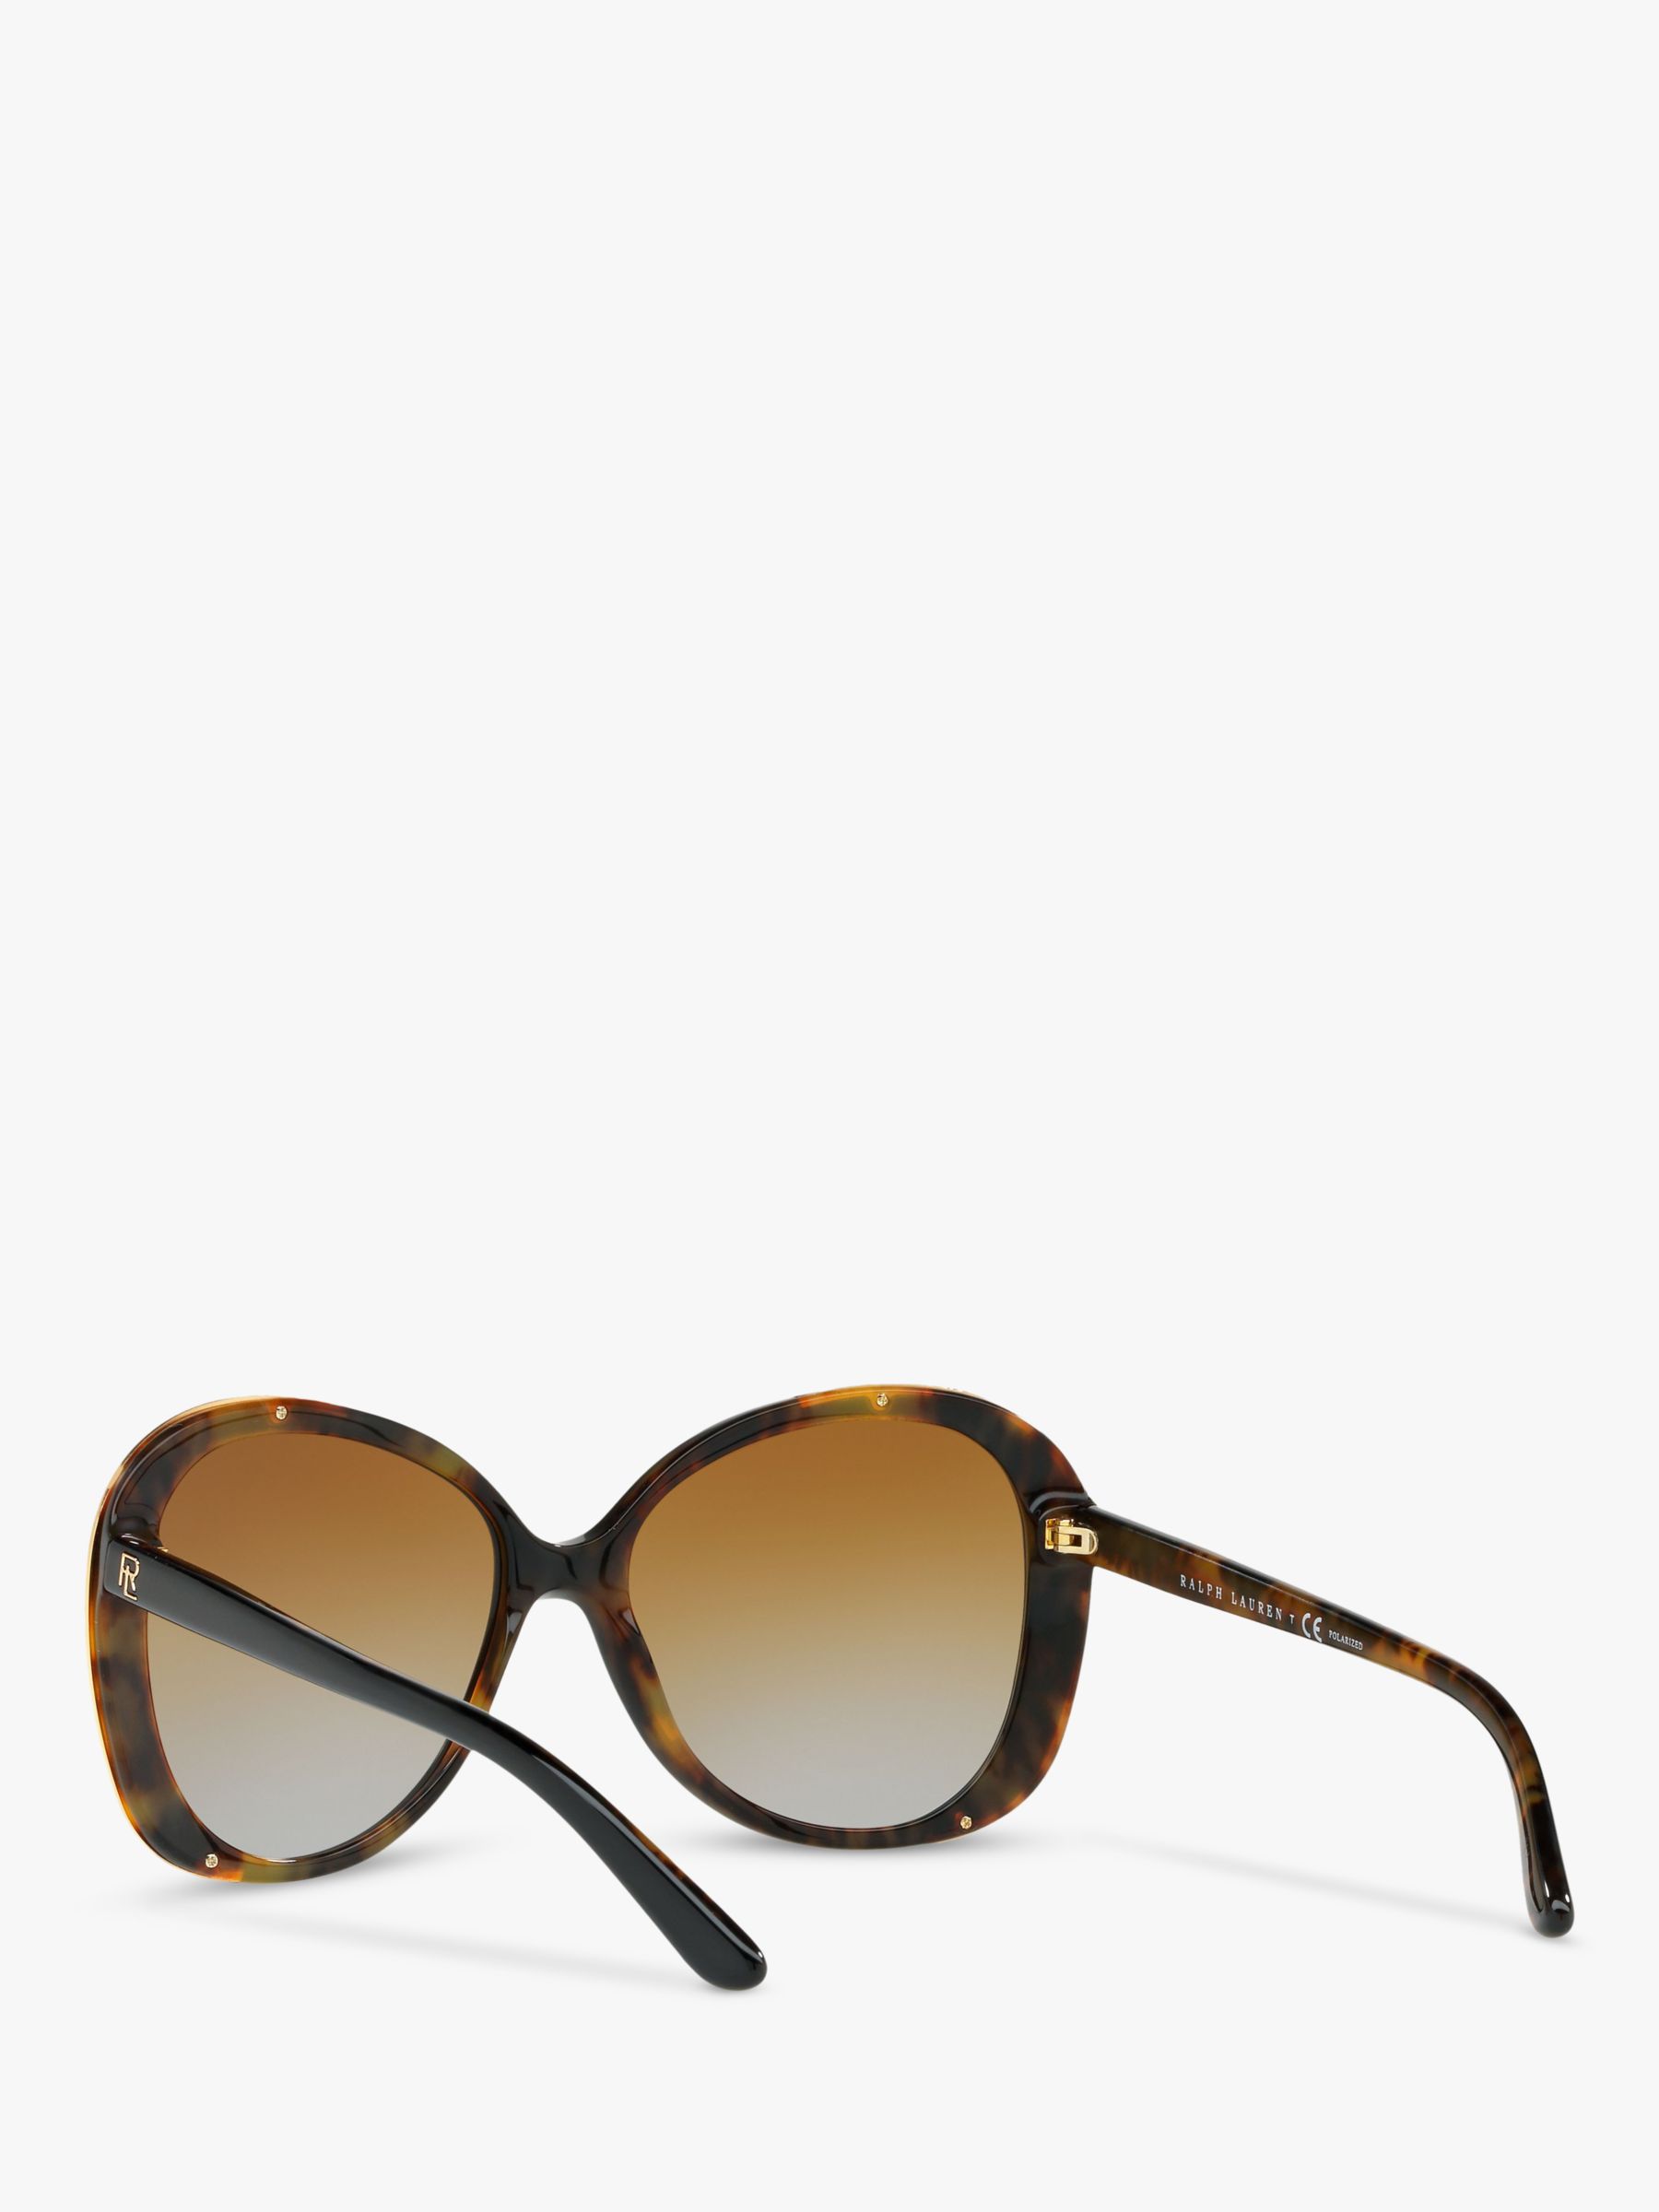 Ralph Lauren RL8166 Women's Polarised Butterfly Sunglasses, Black ...